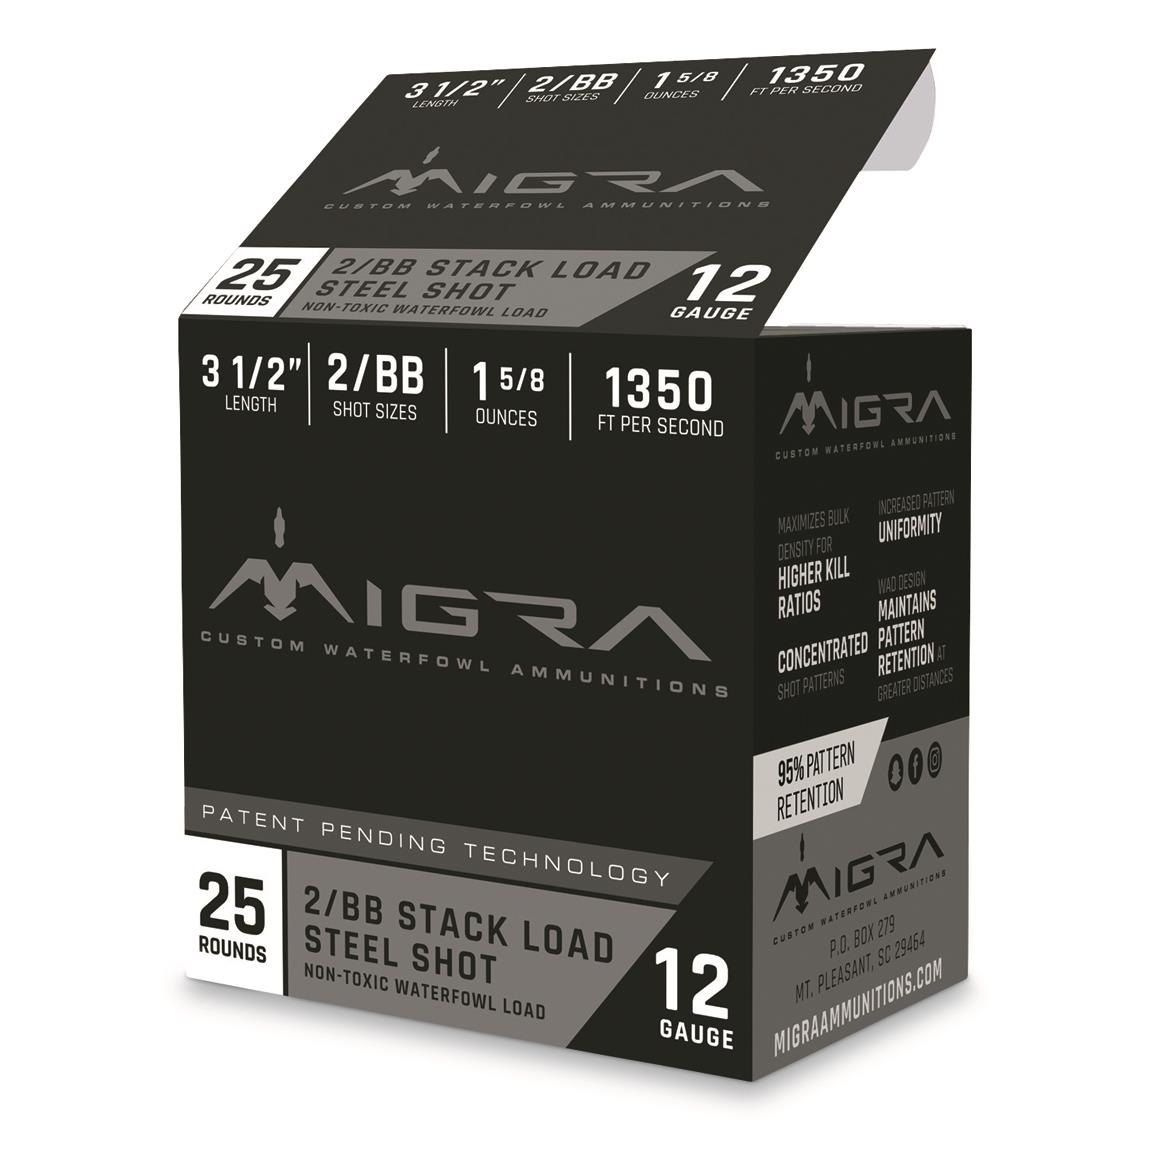 Migra Stack Load Steel Shot, 12 Gauge, 3.5", #2/BB, 1 5/8 oz., 25 Rounds